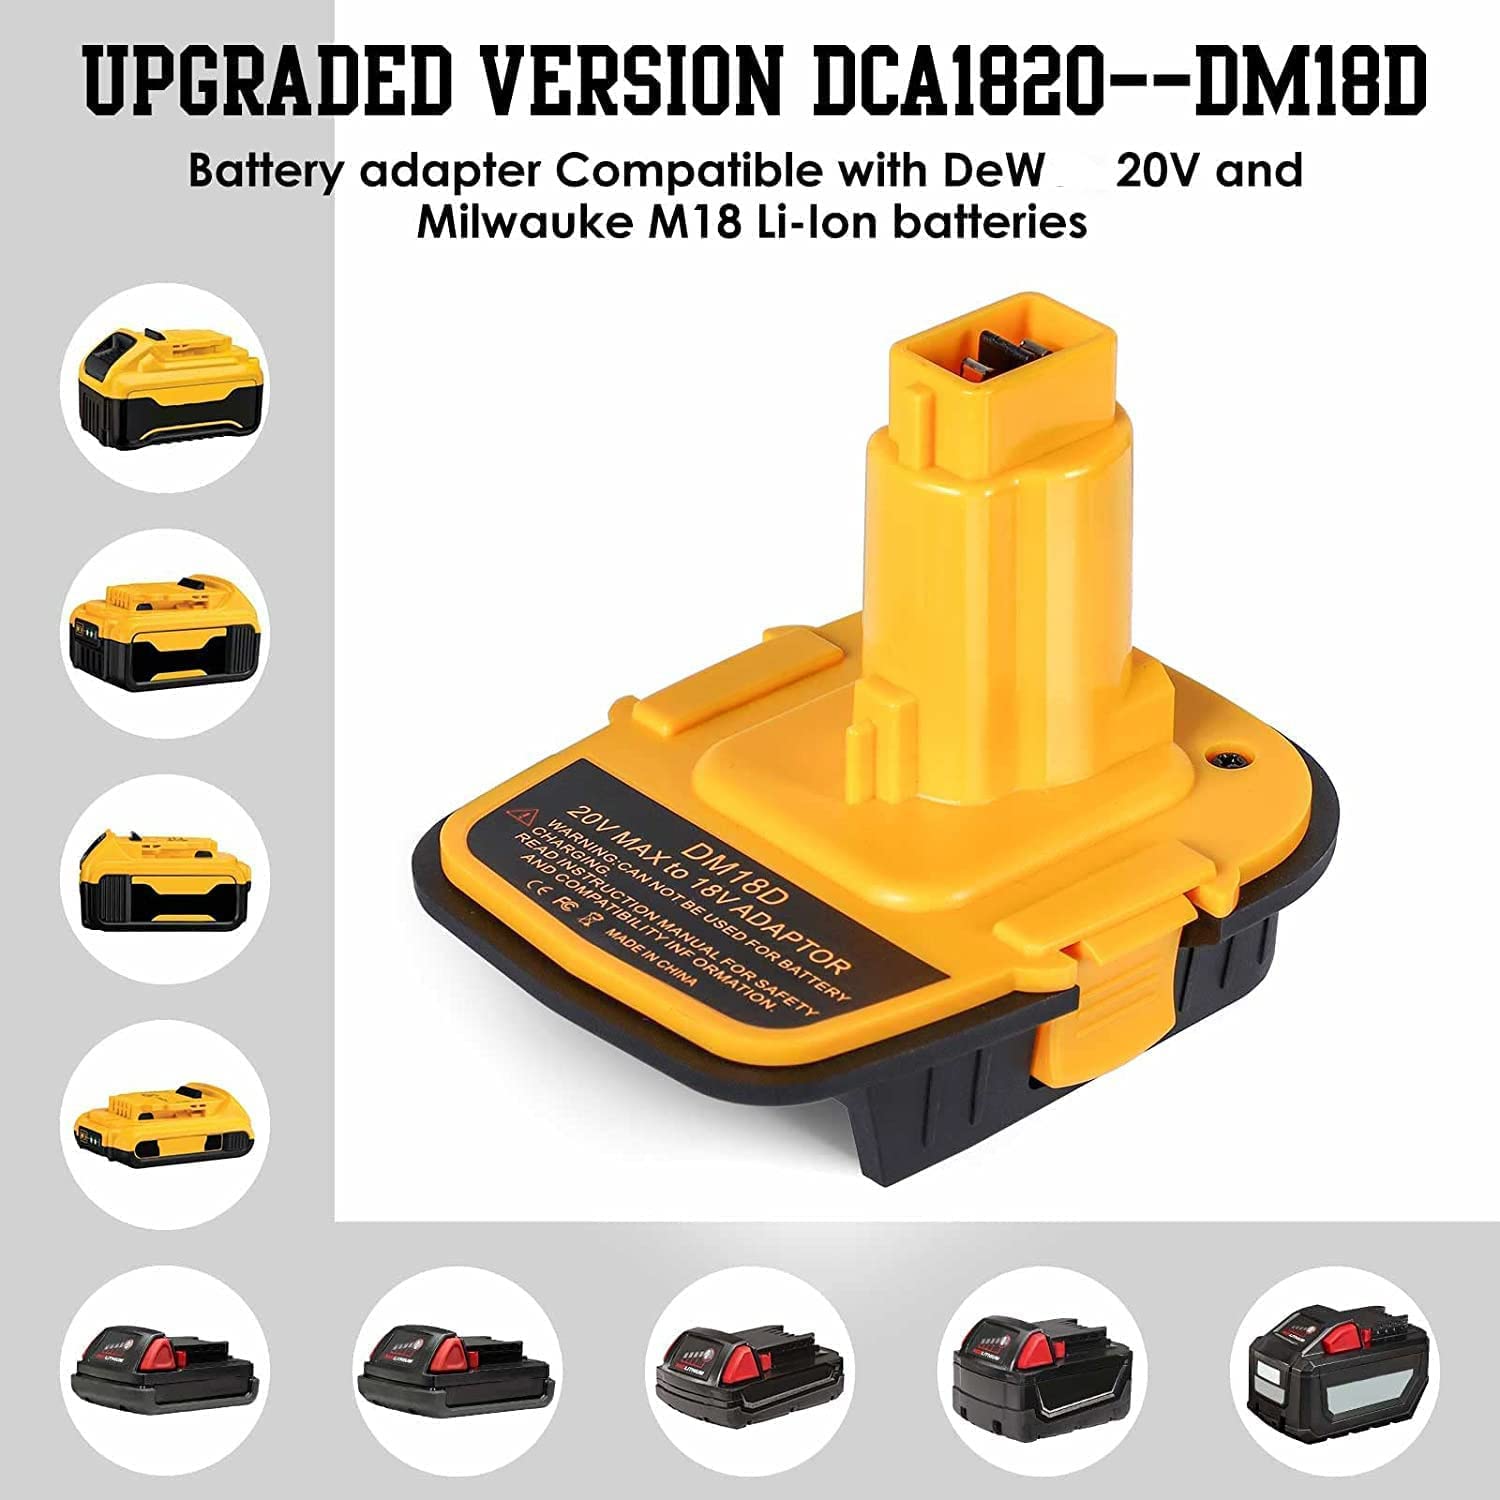 Batteriadapter DM18D med USB-port